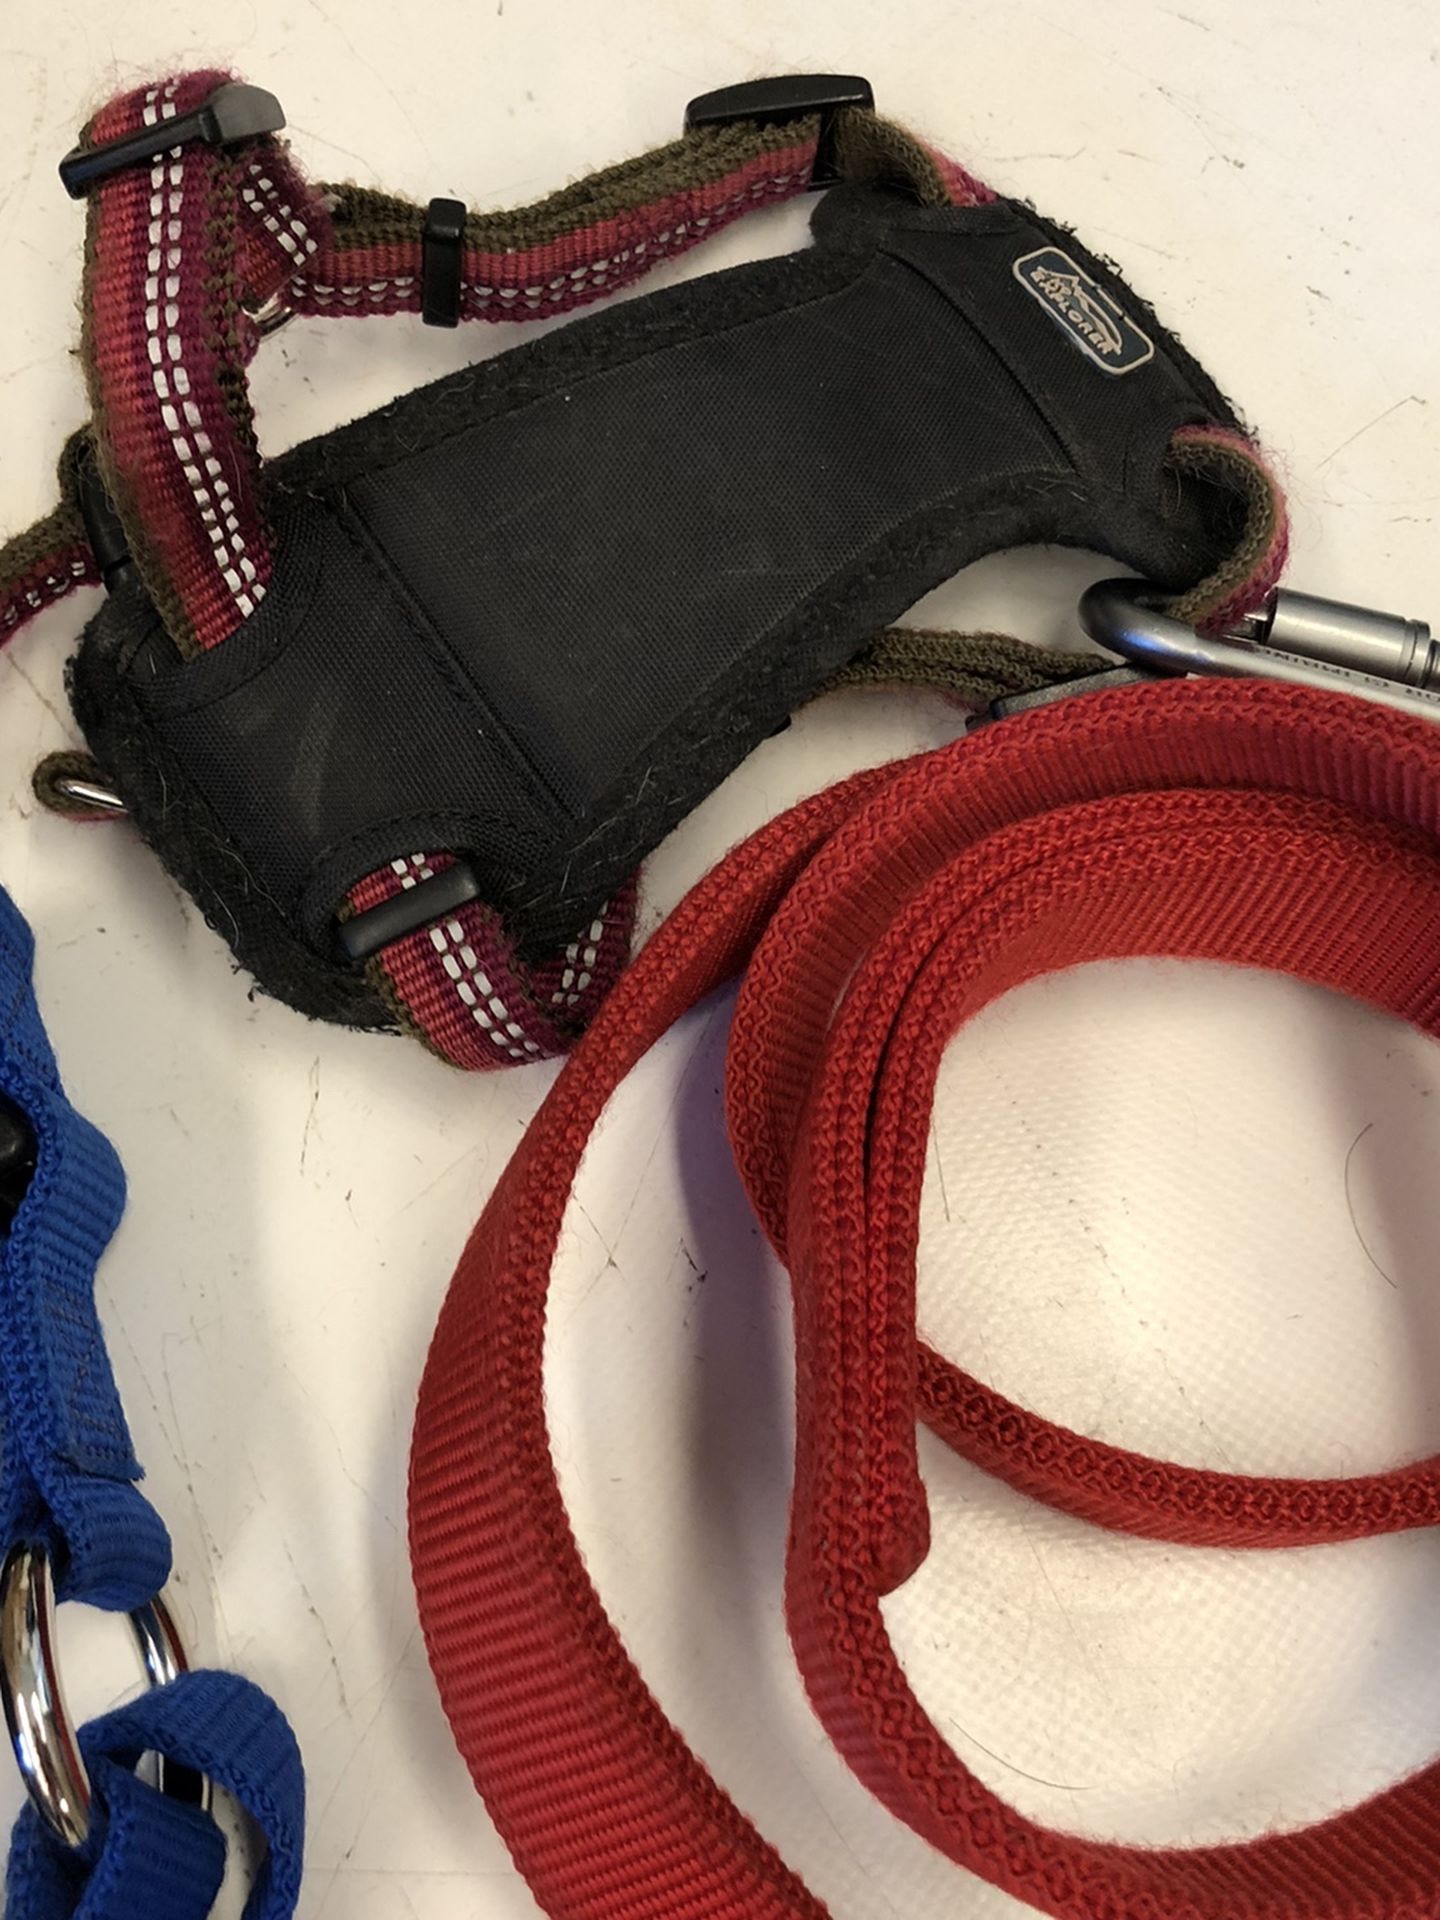 Bag Of Dog Leash, Harness, Collars